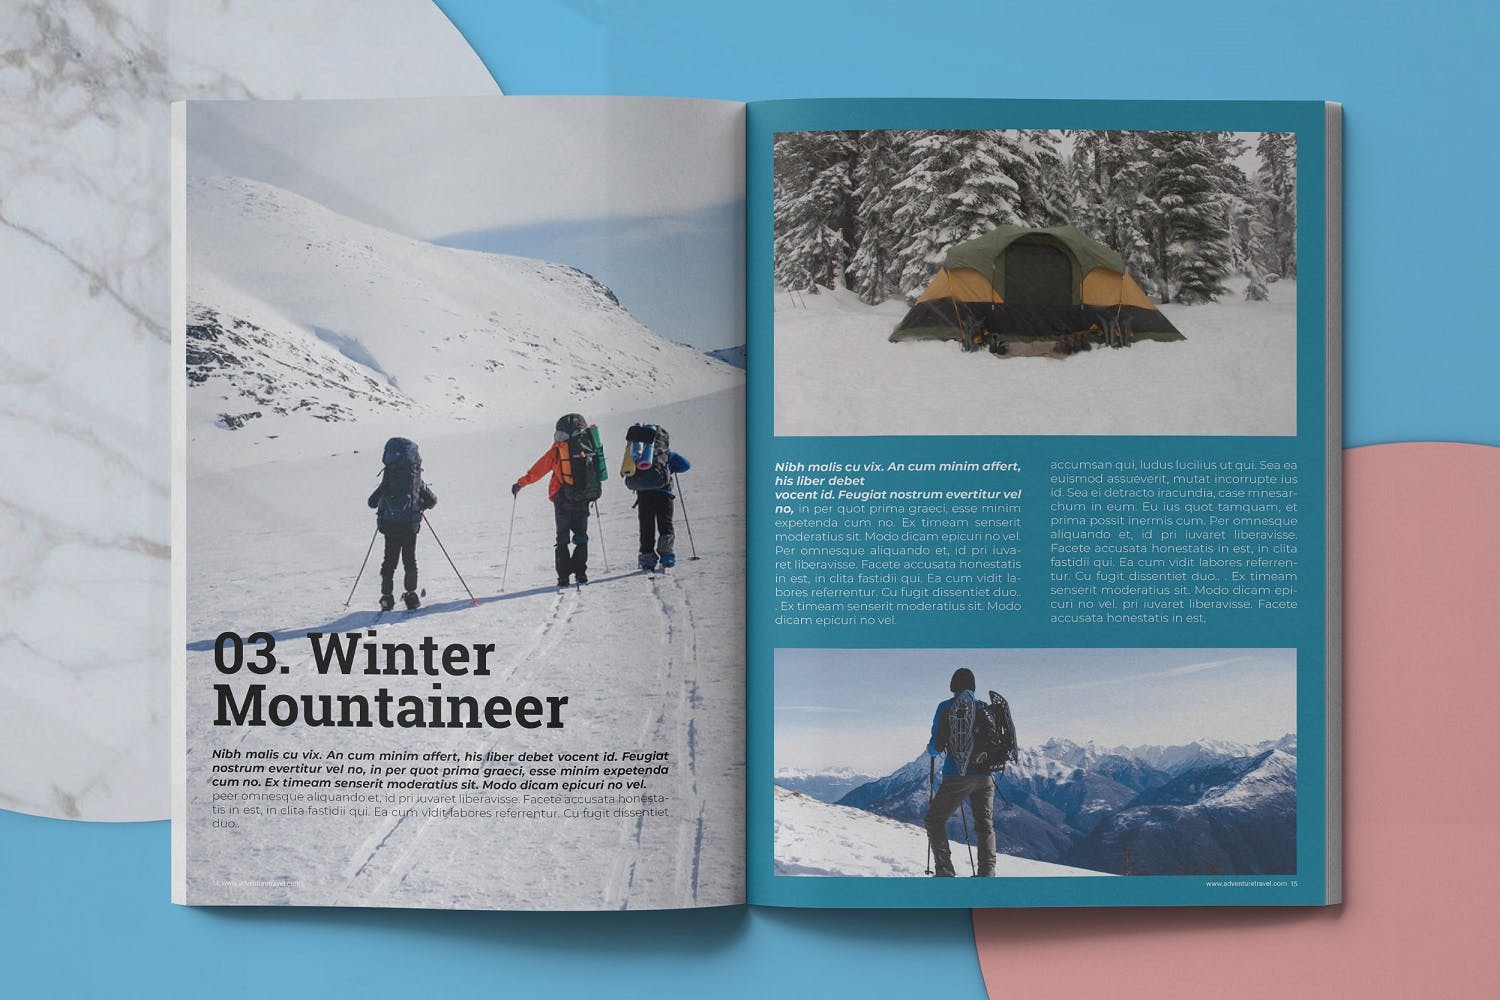 冒险旅行主题普贤居精选杂志排版设计模板 Adventure Travel Magazine Template插图(7)